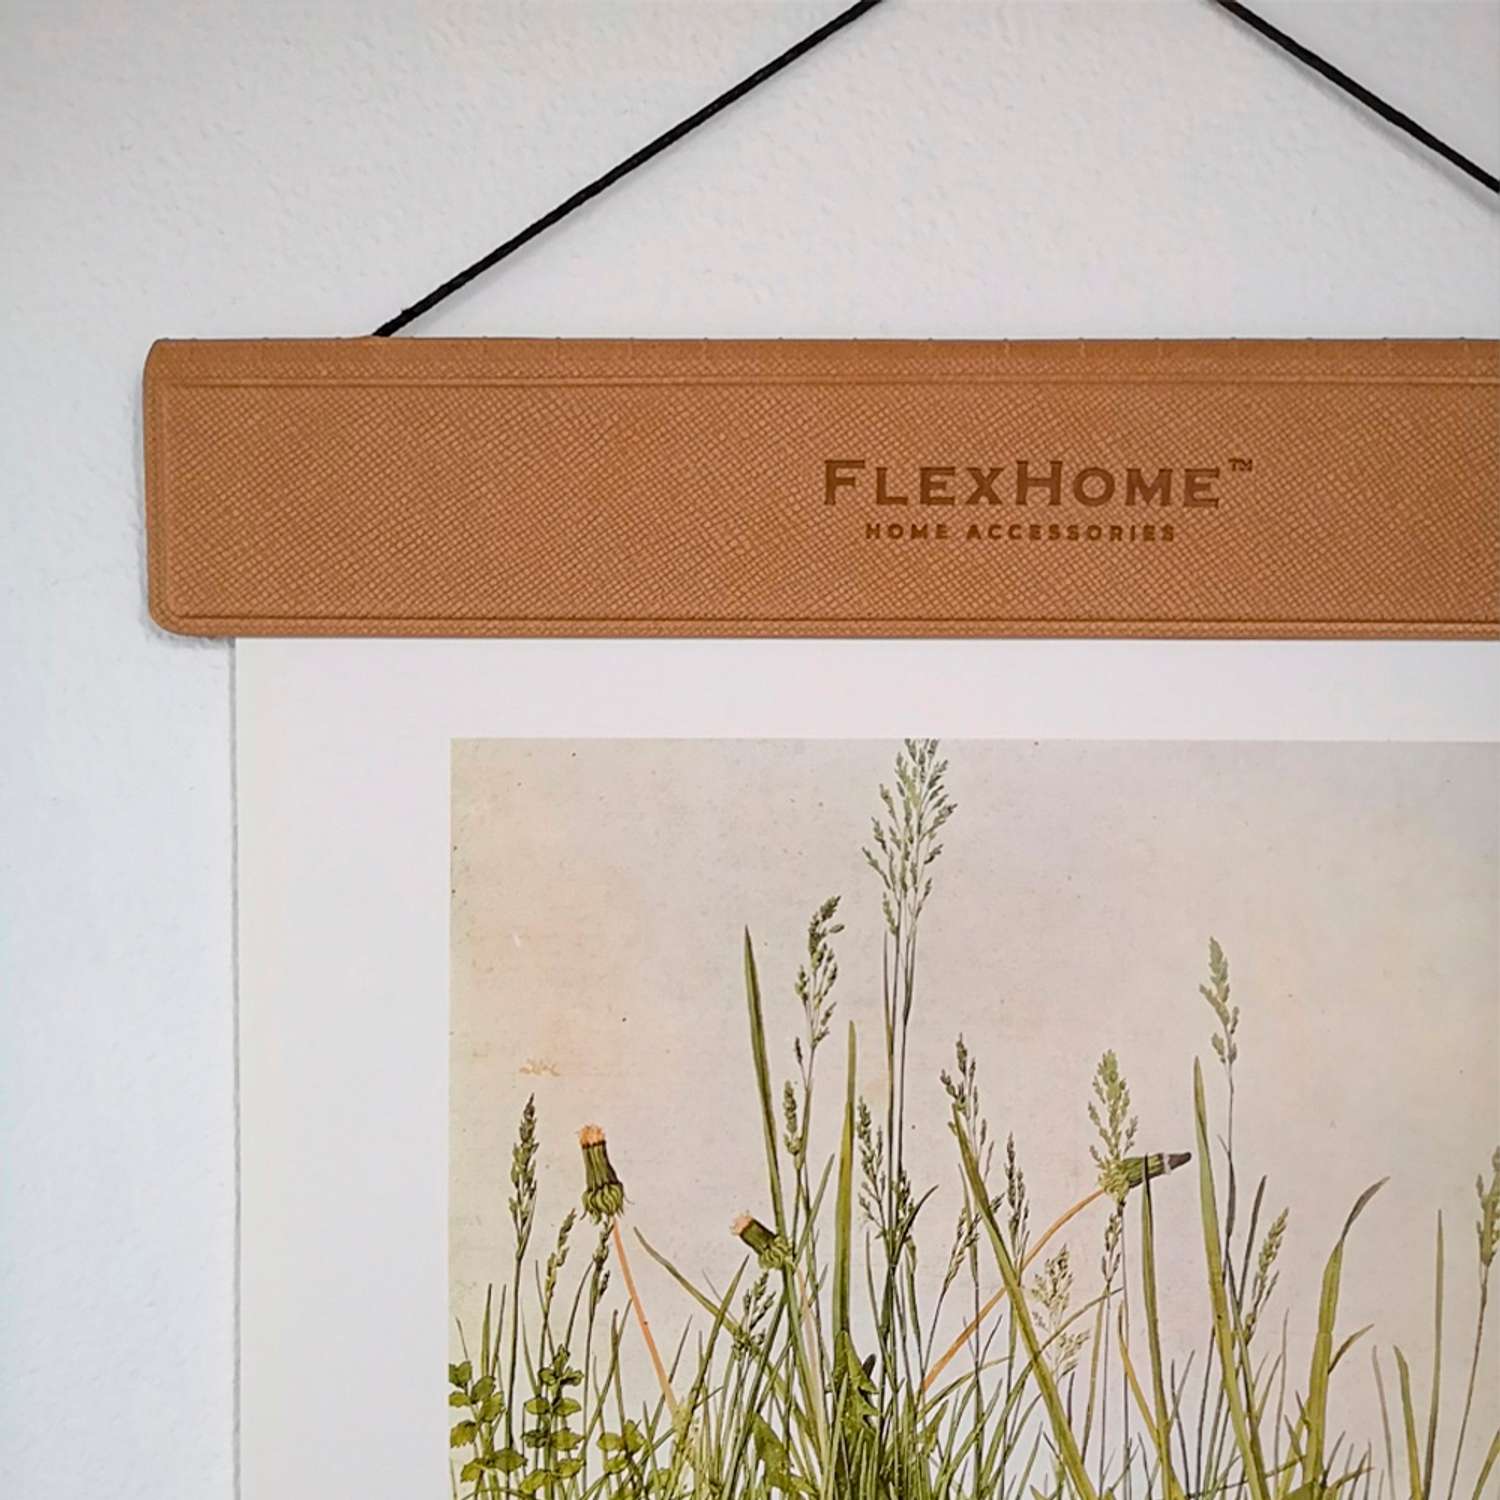 Фоторамка FlexHome подвесная магнитная А4 формата на стену для постера/фотографии/картины - фото 2